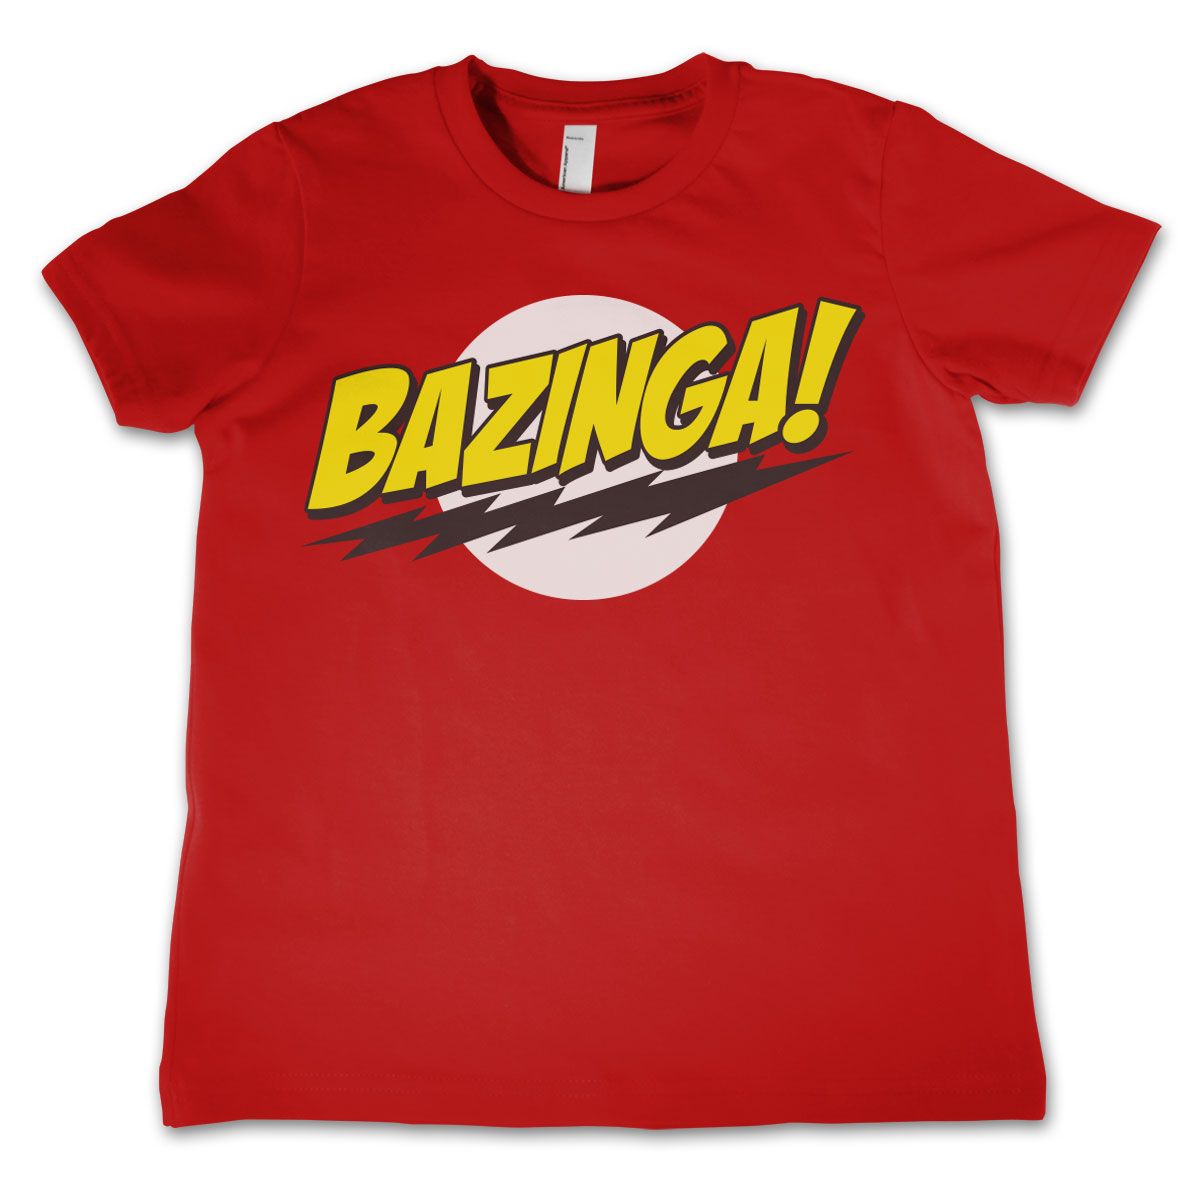 The Big Bang Theory dětské tričko s potiskem Bazinga Super Logo